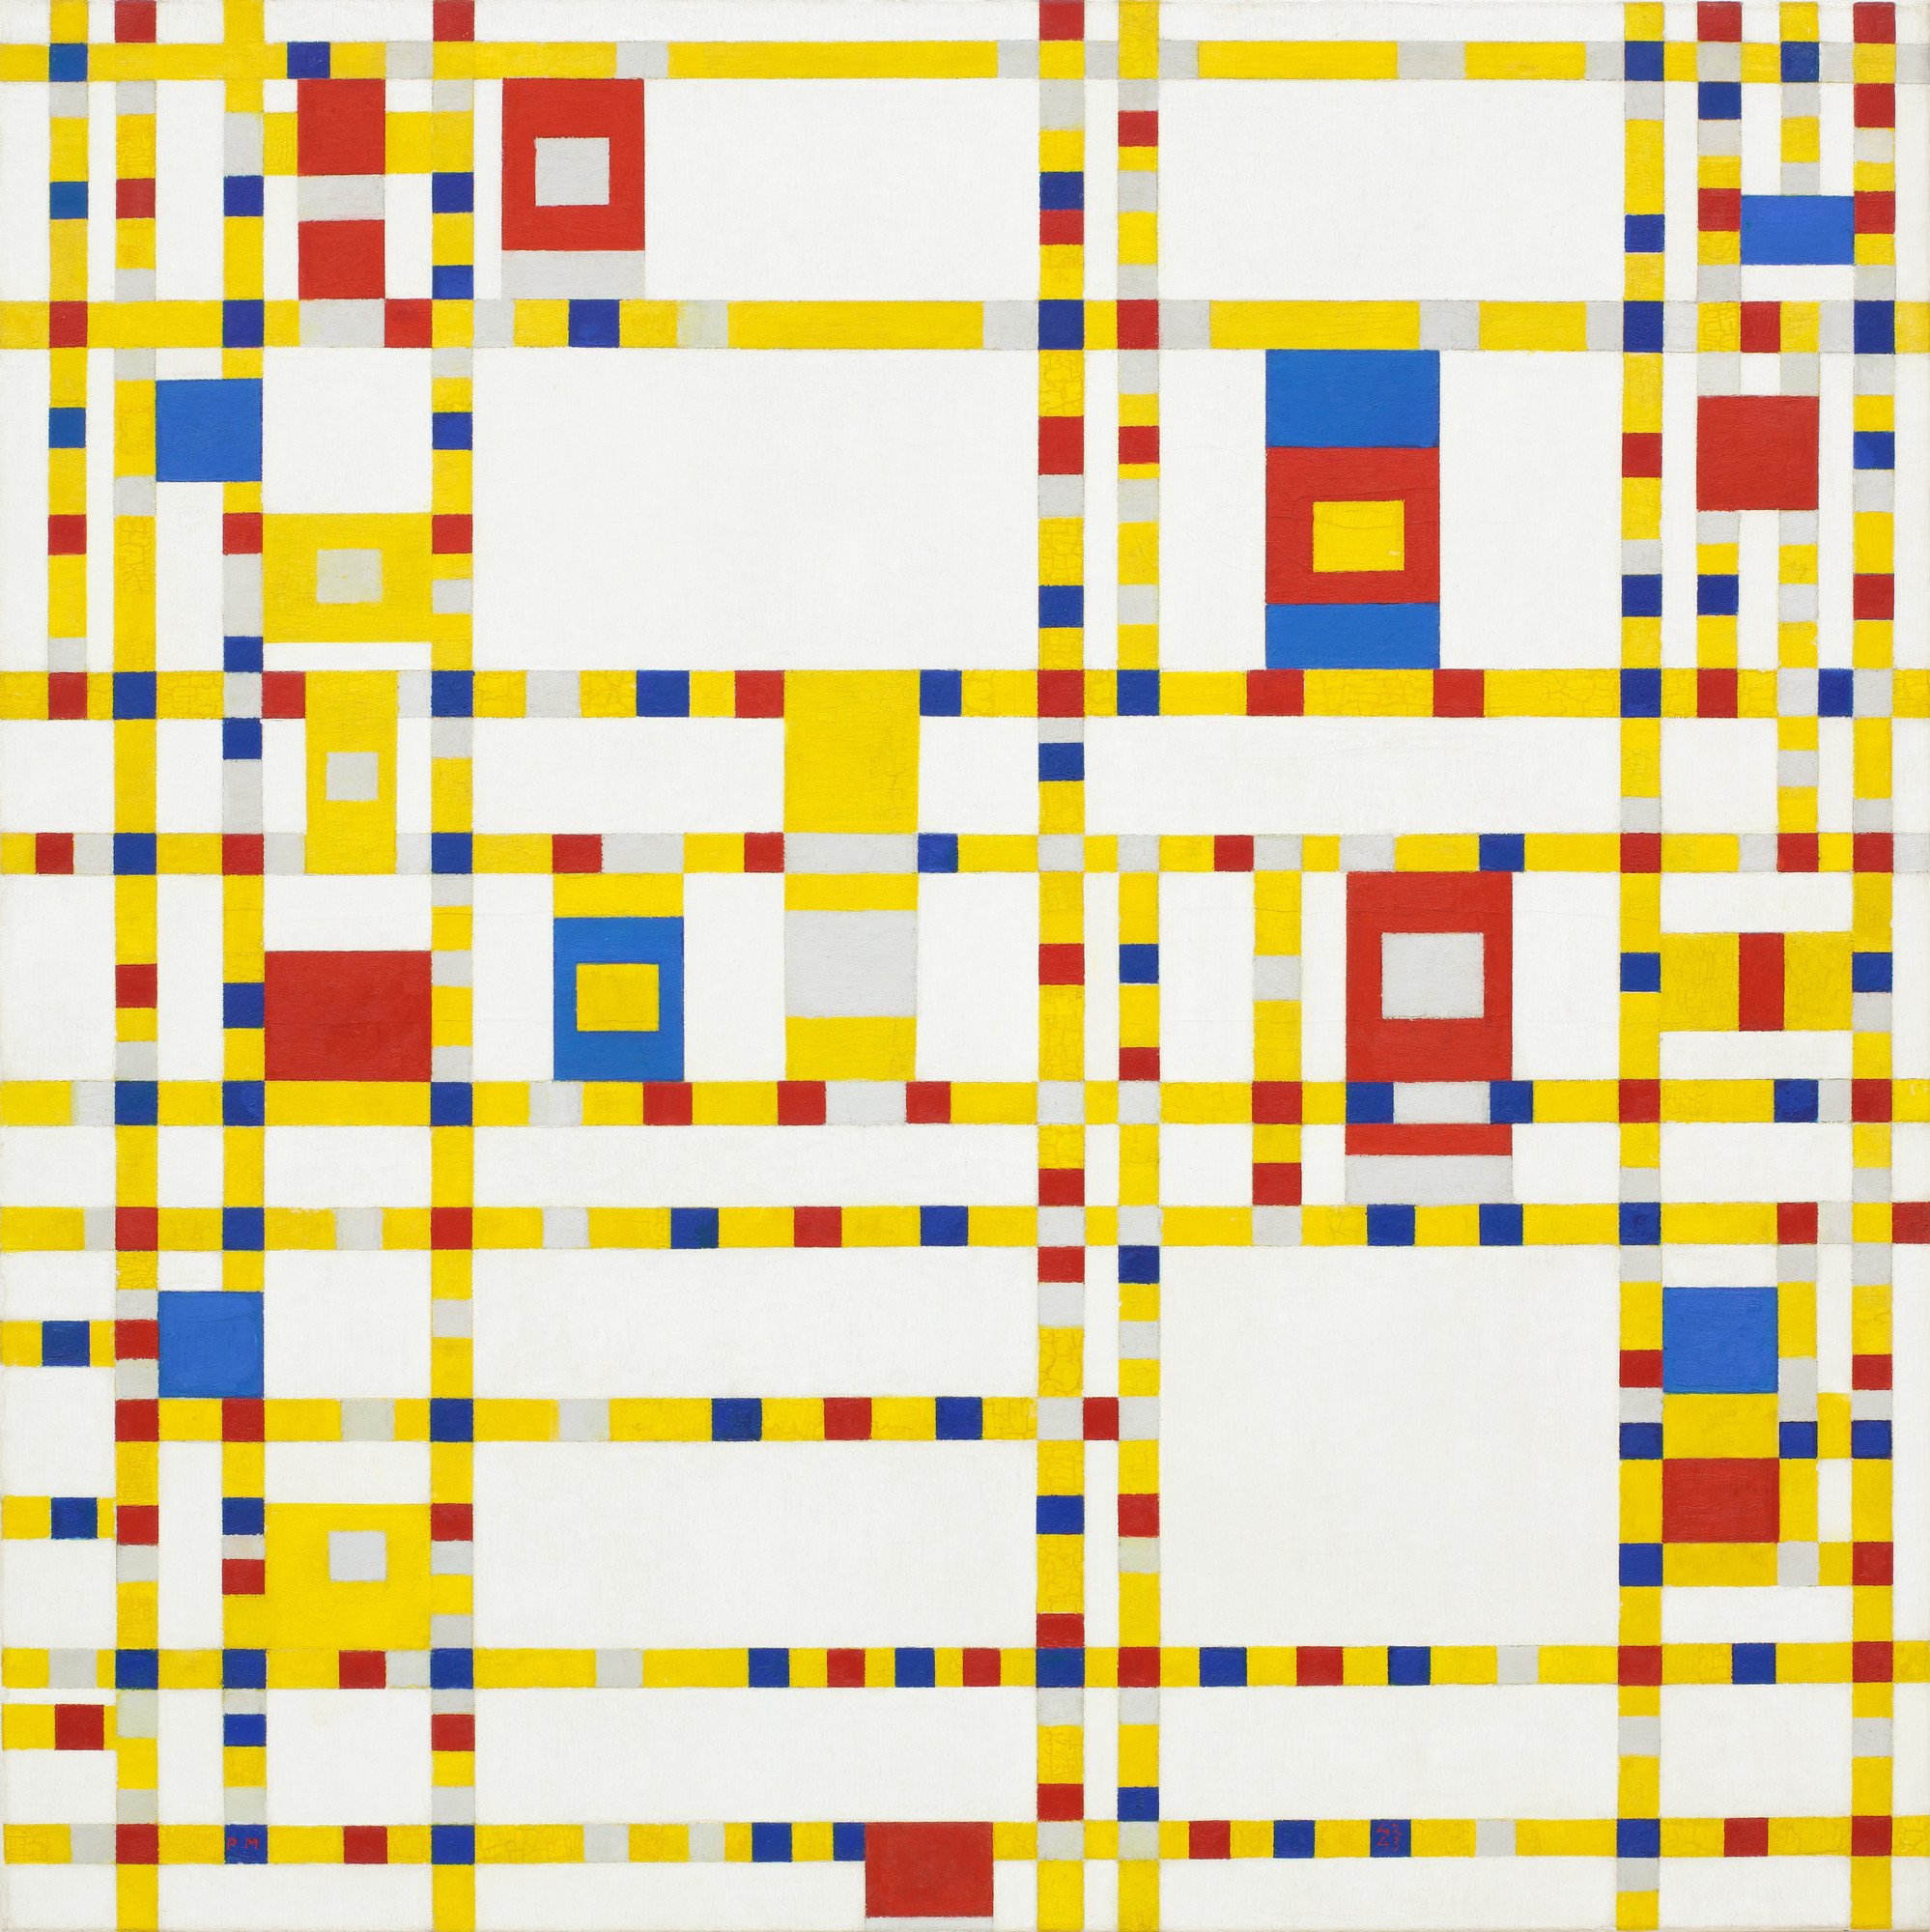 Piet Mondrian. Broadway Boogie Woogie. 1942-43 | MoMA